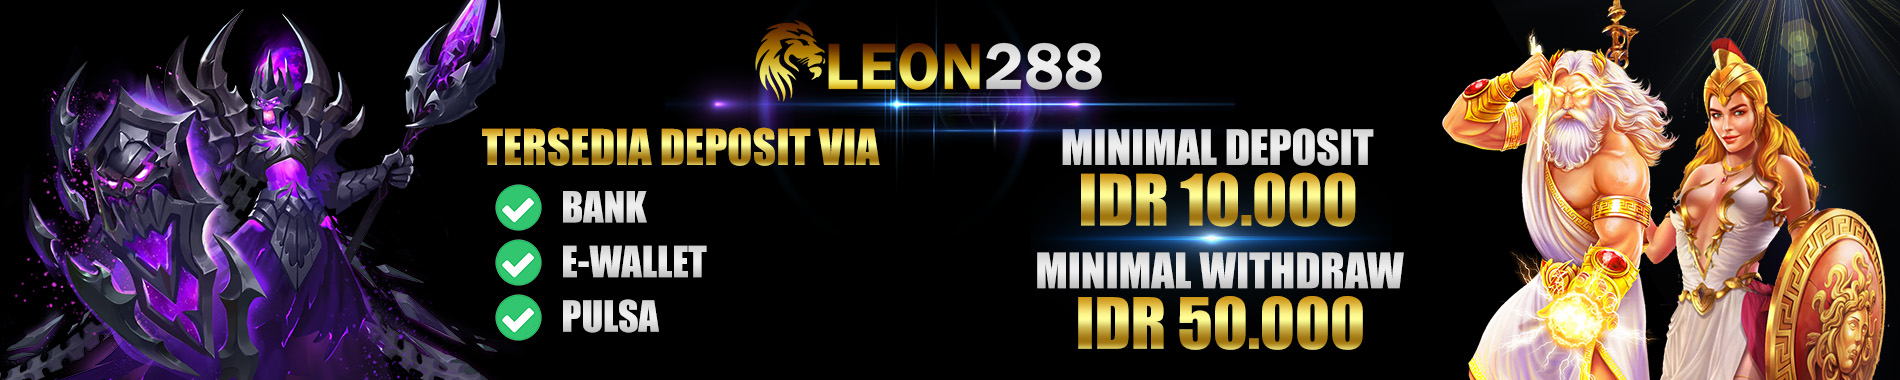 LEON288 Situs Slot Online Gacor